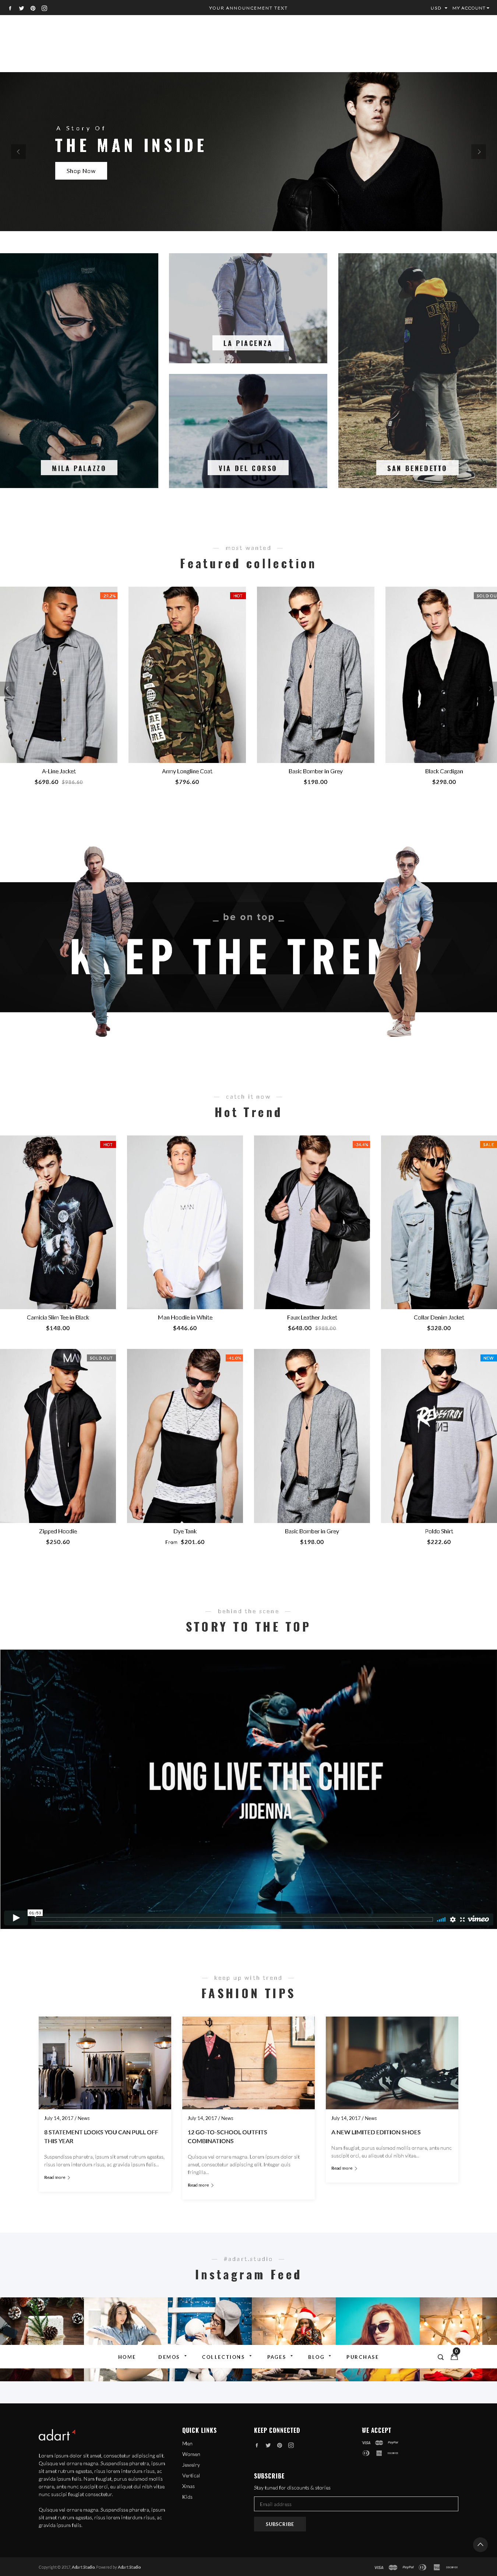 Best Shopify themes for men wear - Gemini - Responsive Shopify Fashion Theme